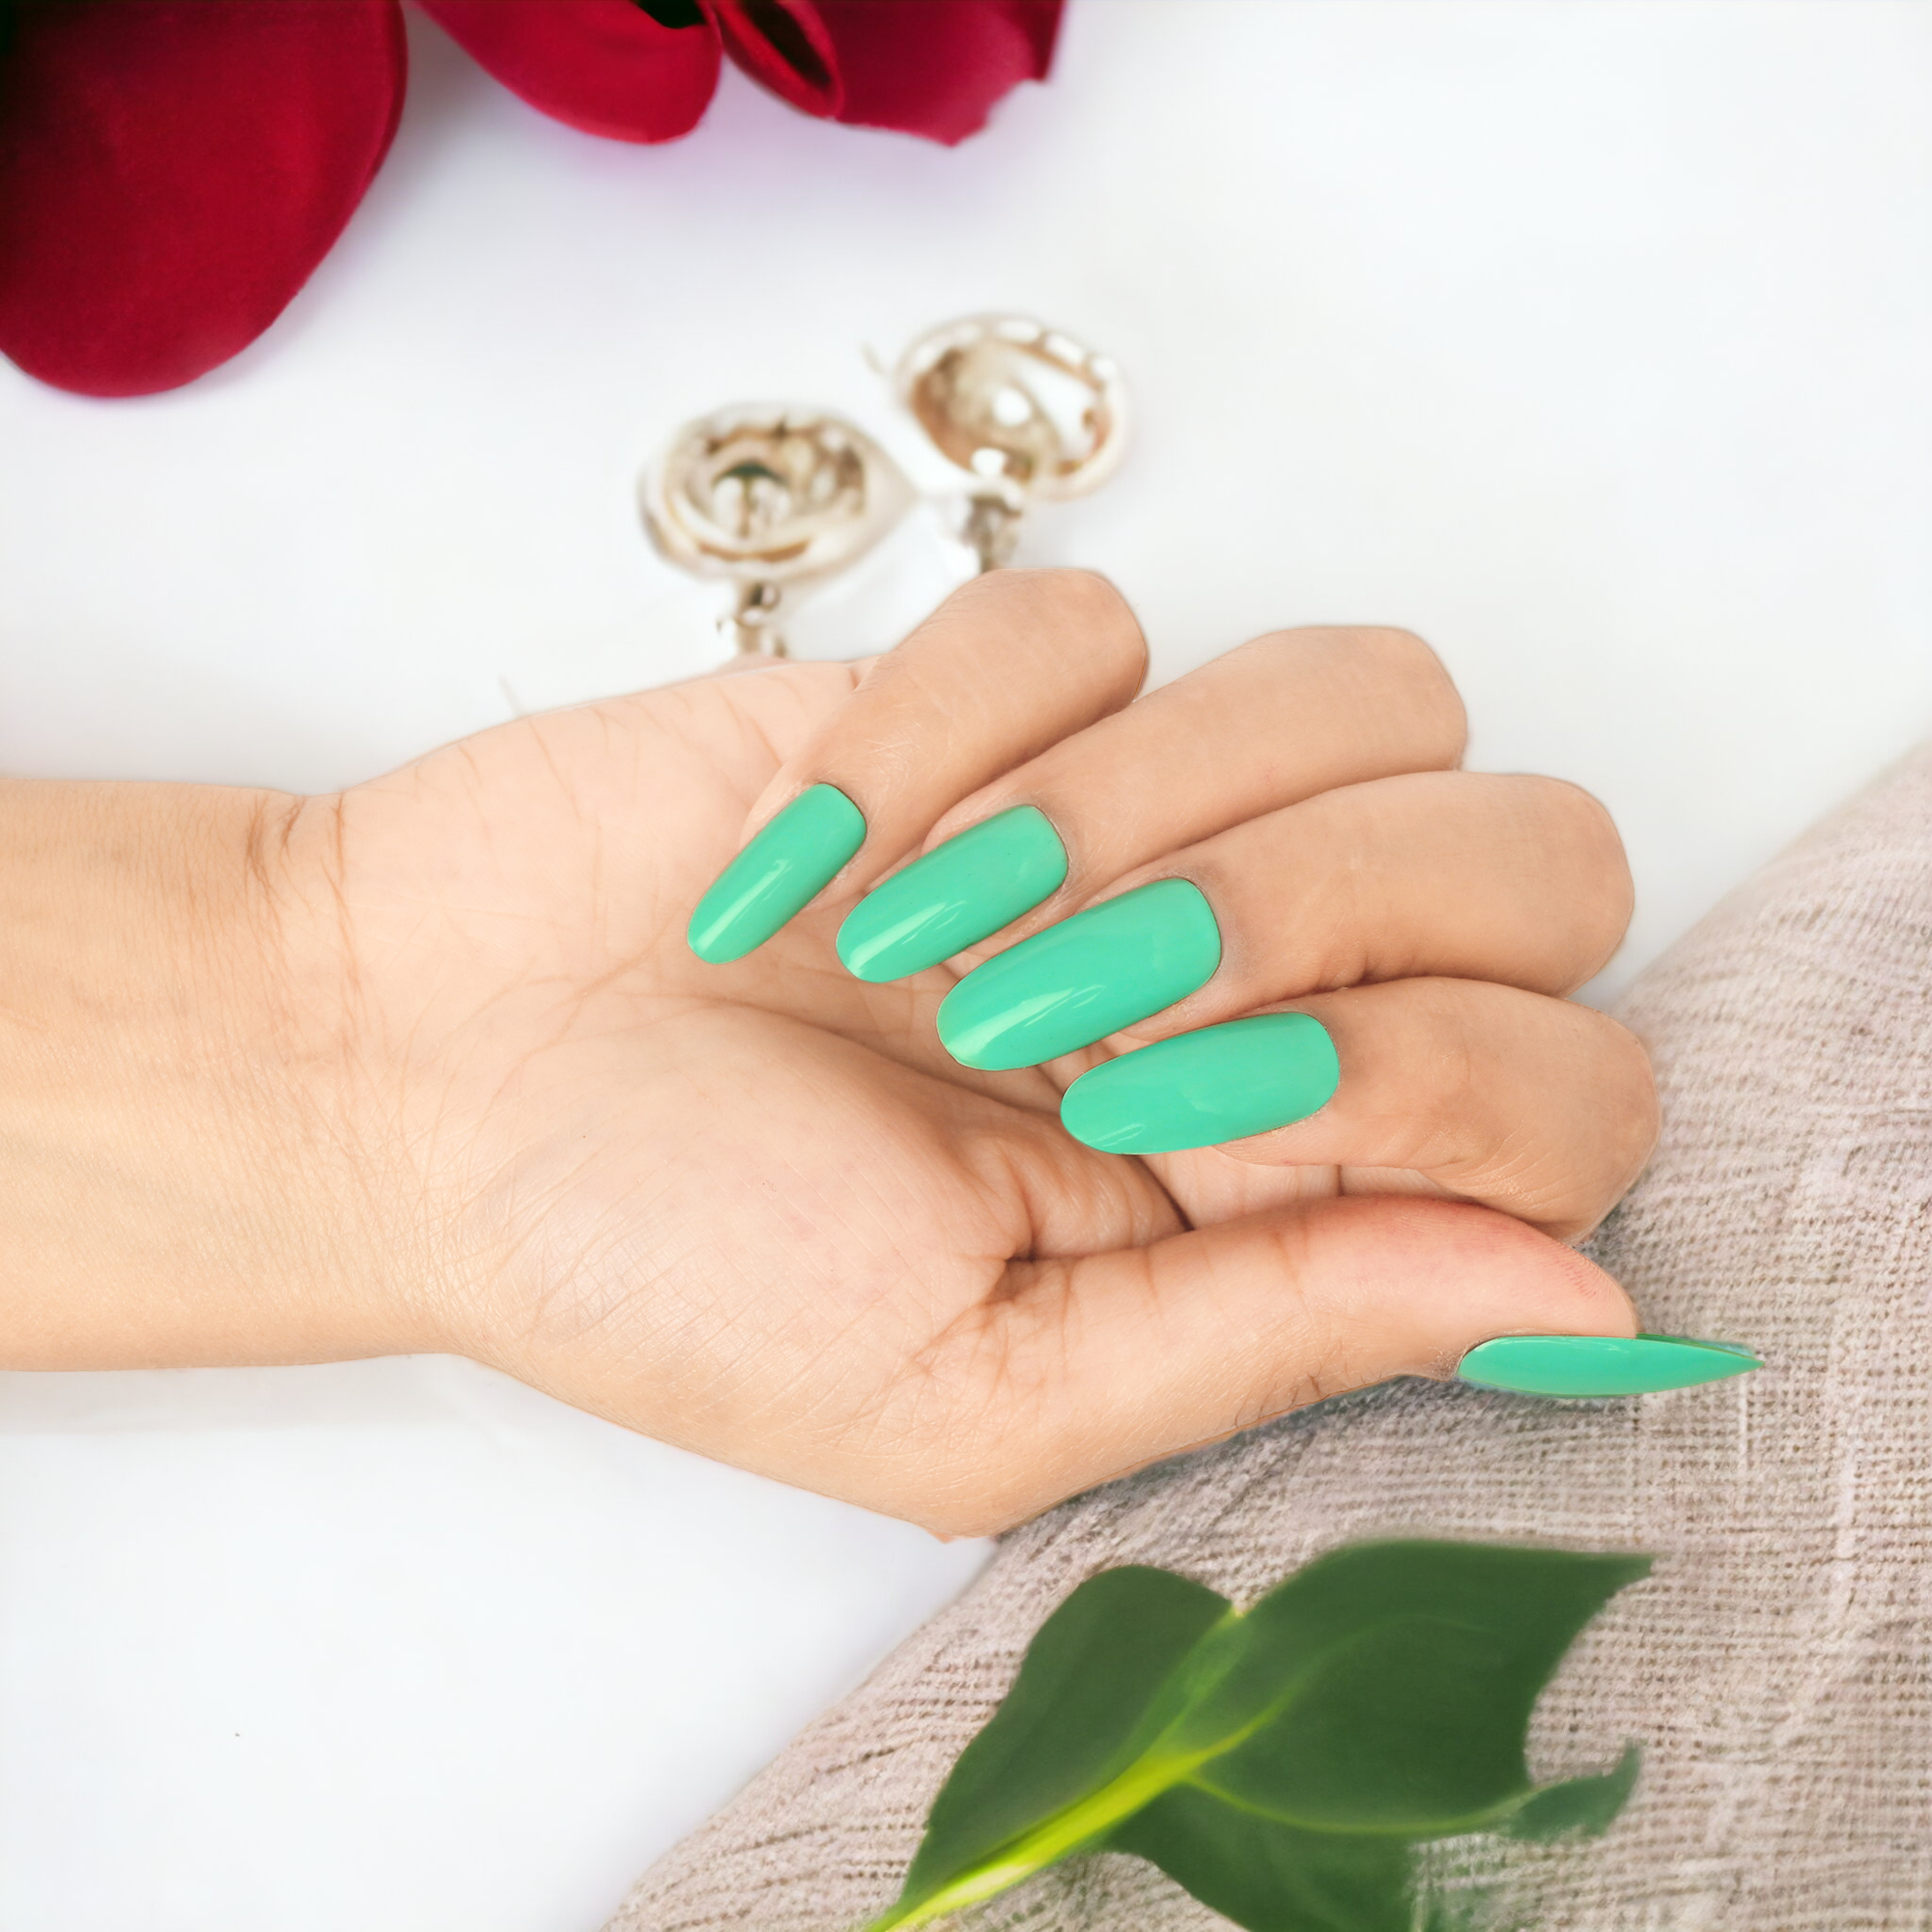 Manicure Nails Beautiful Light Green Yellow Stock Photo 478032325 |  Shutterstock